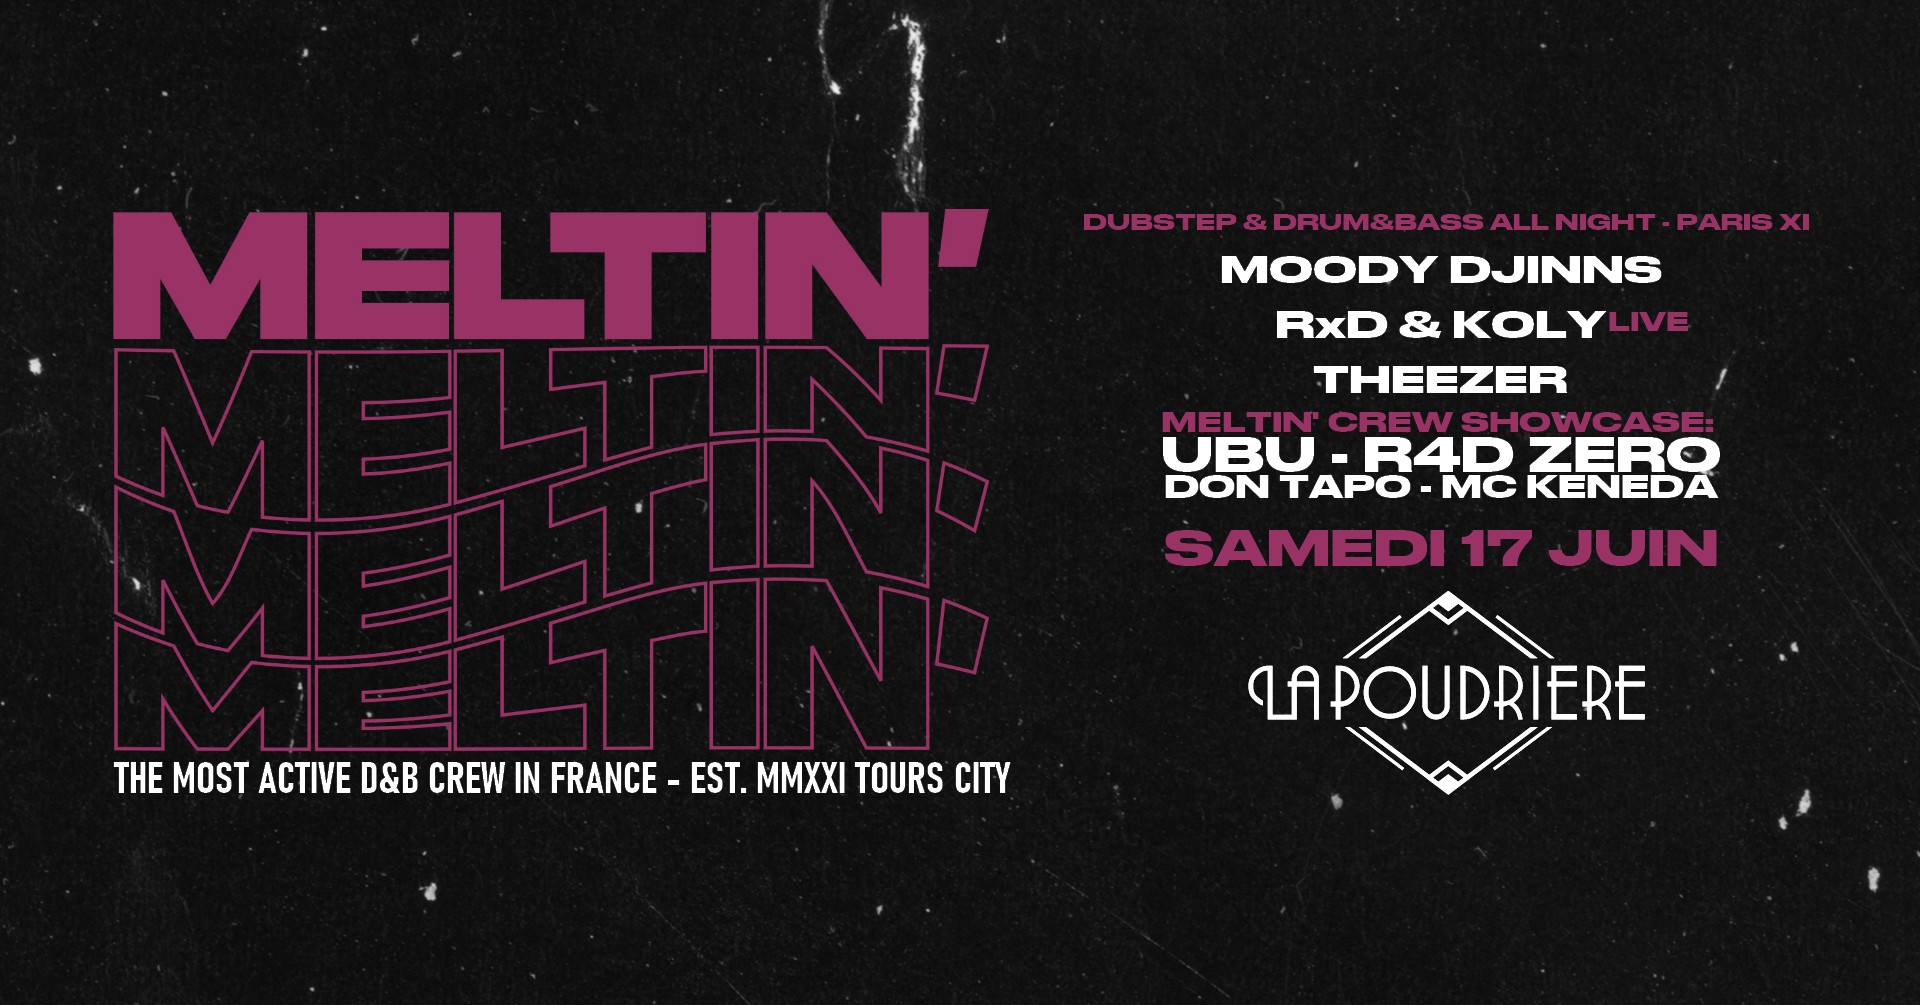 MELTIN' - drum&bass et dubstep all night à PARIS!